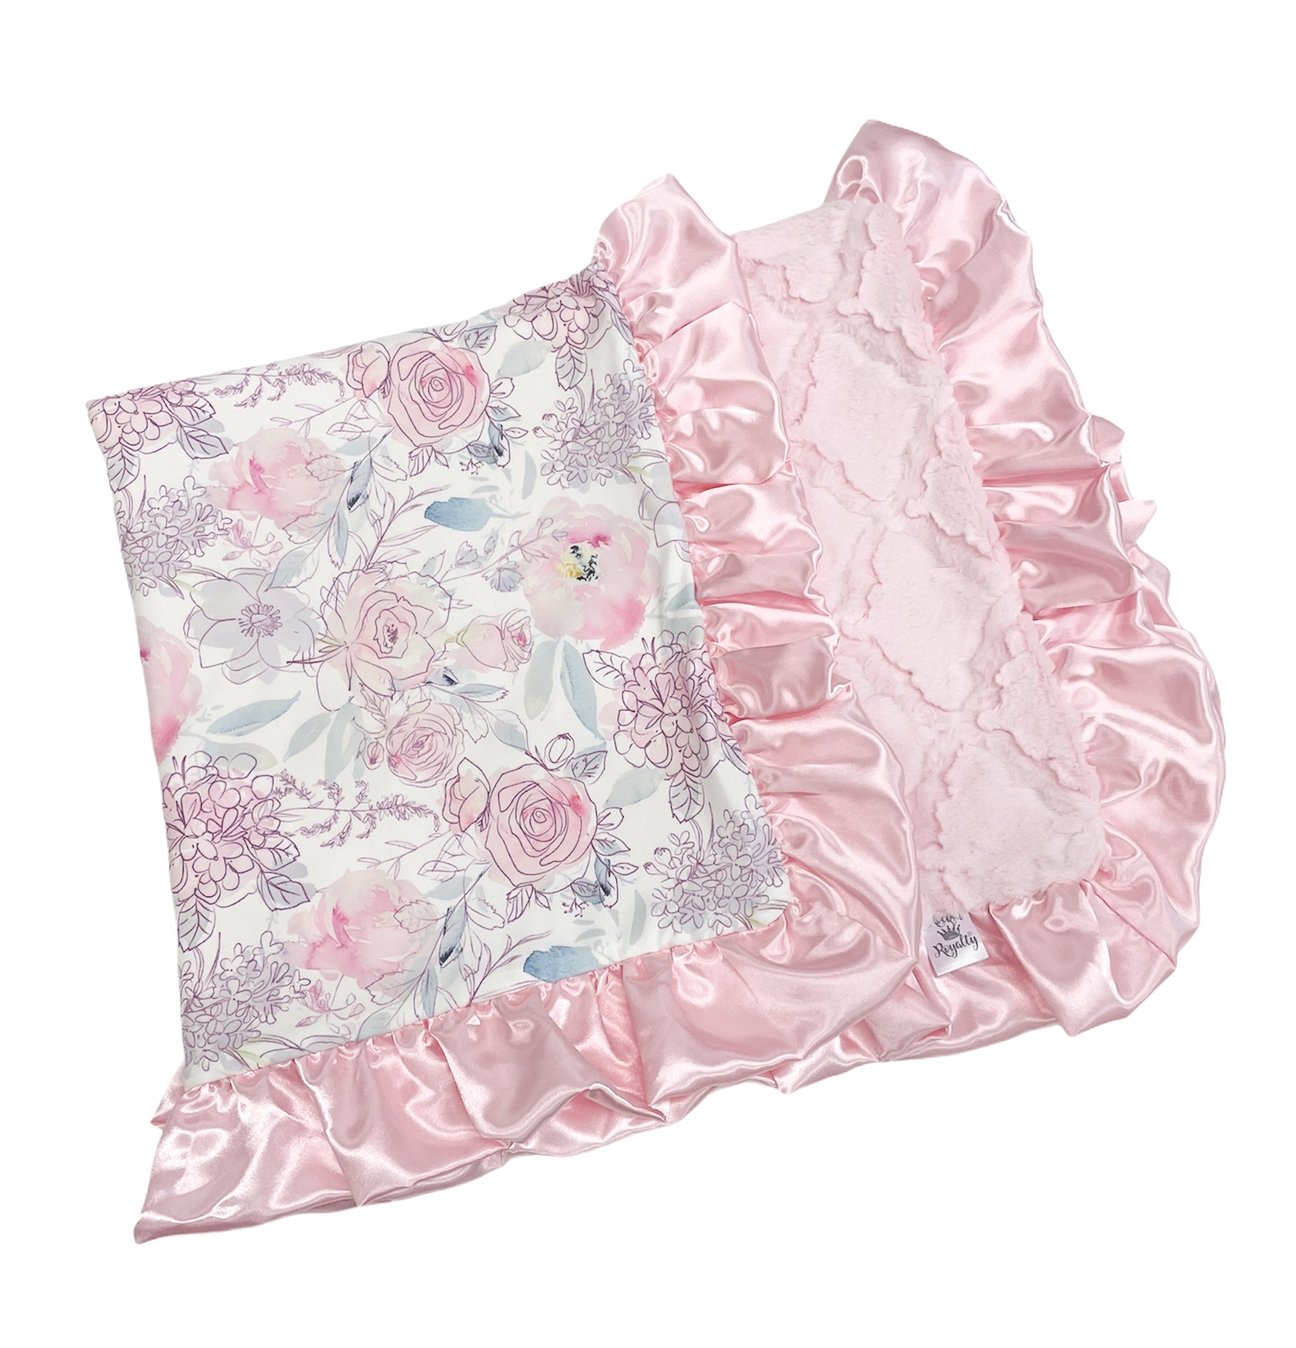 Bashful Pink Blanket  - Doodlebug's Children's Boutique